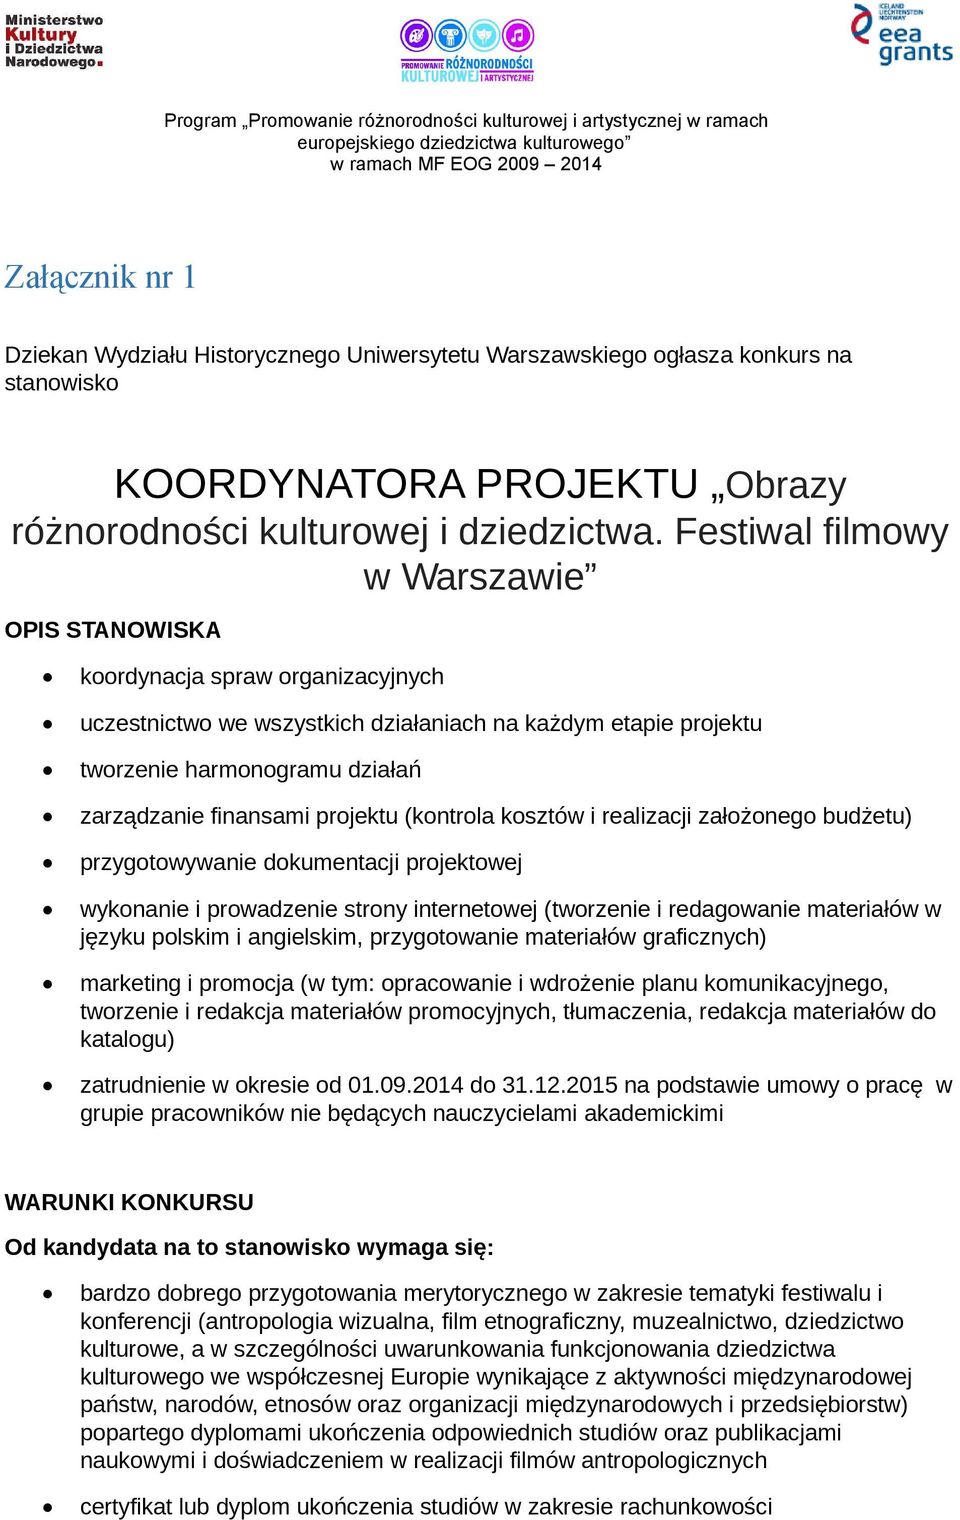 projektu (kontrola kosztów i realizacji założonego budżetu) przygotowywanie dokumentacji projektowej wykonanie i prowadzenie strony internetowej (tworzenie i redagowanie materiałów w języku polskim i